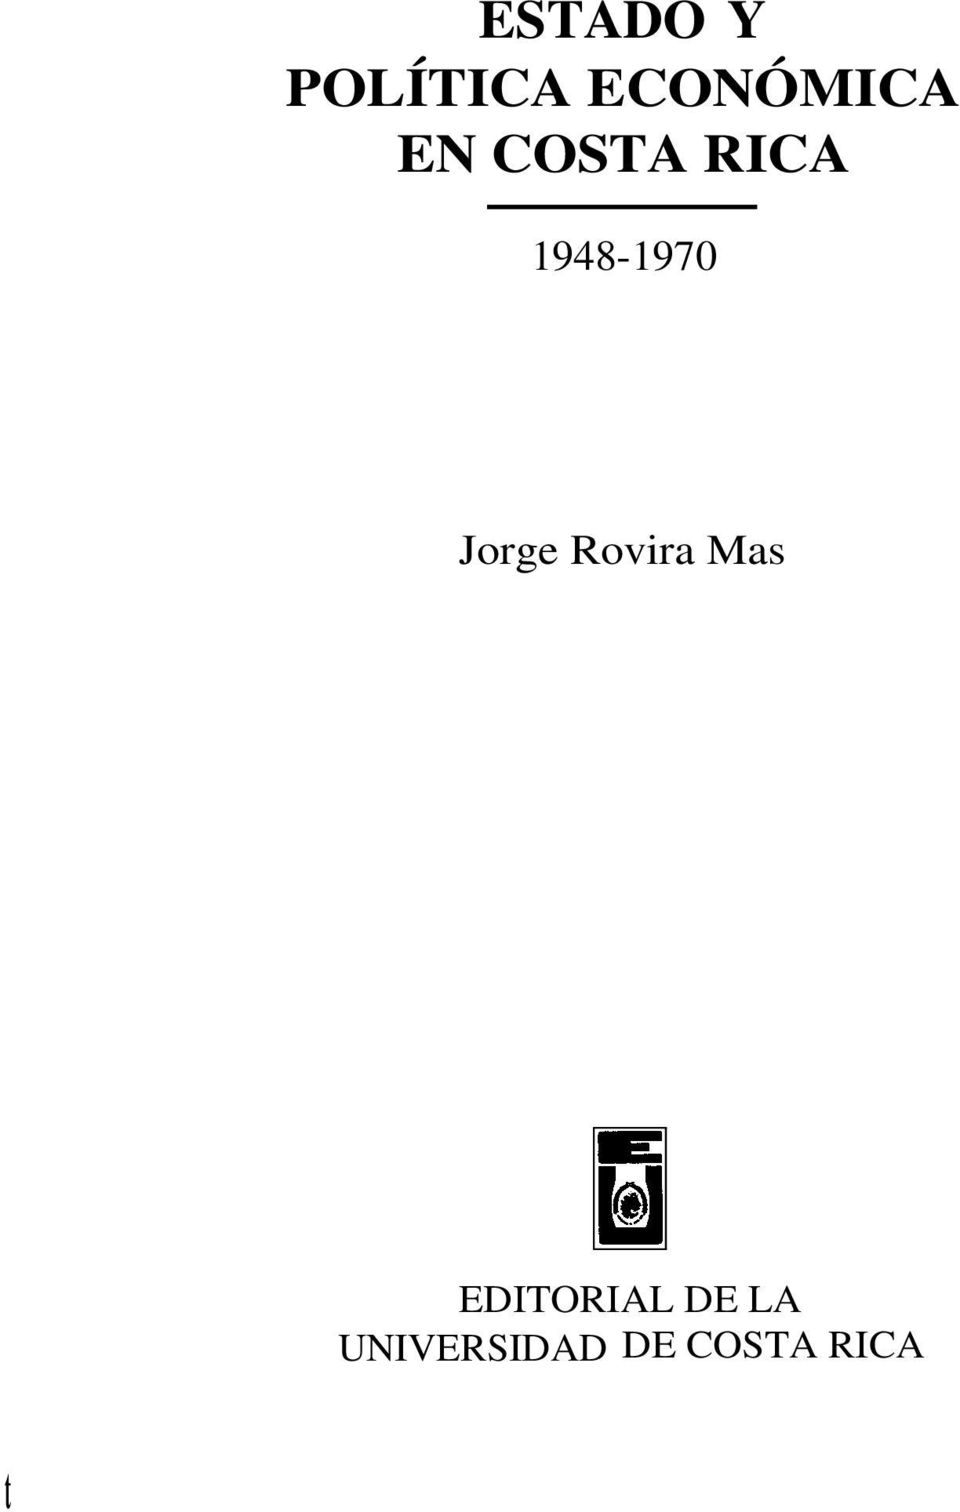 Jorge Rovira Mas EDITORIAL